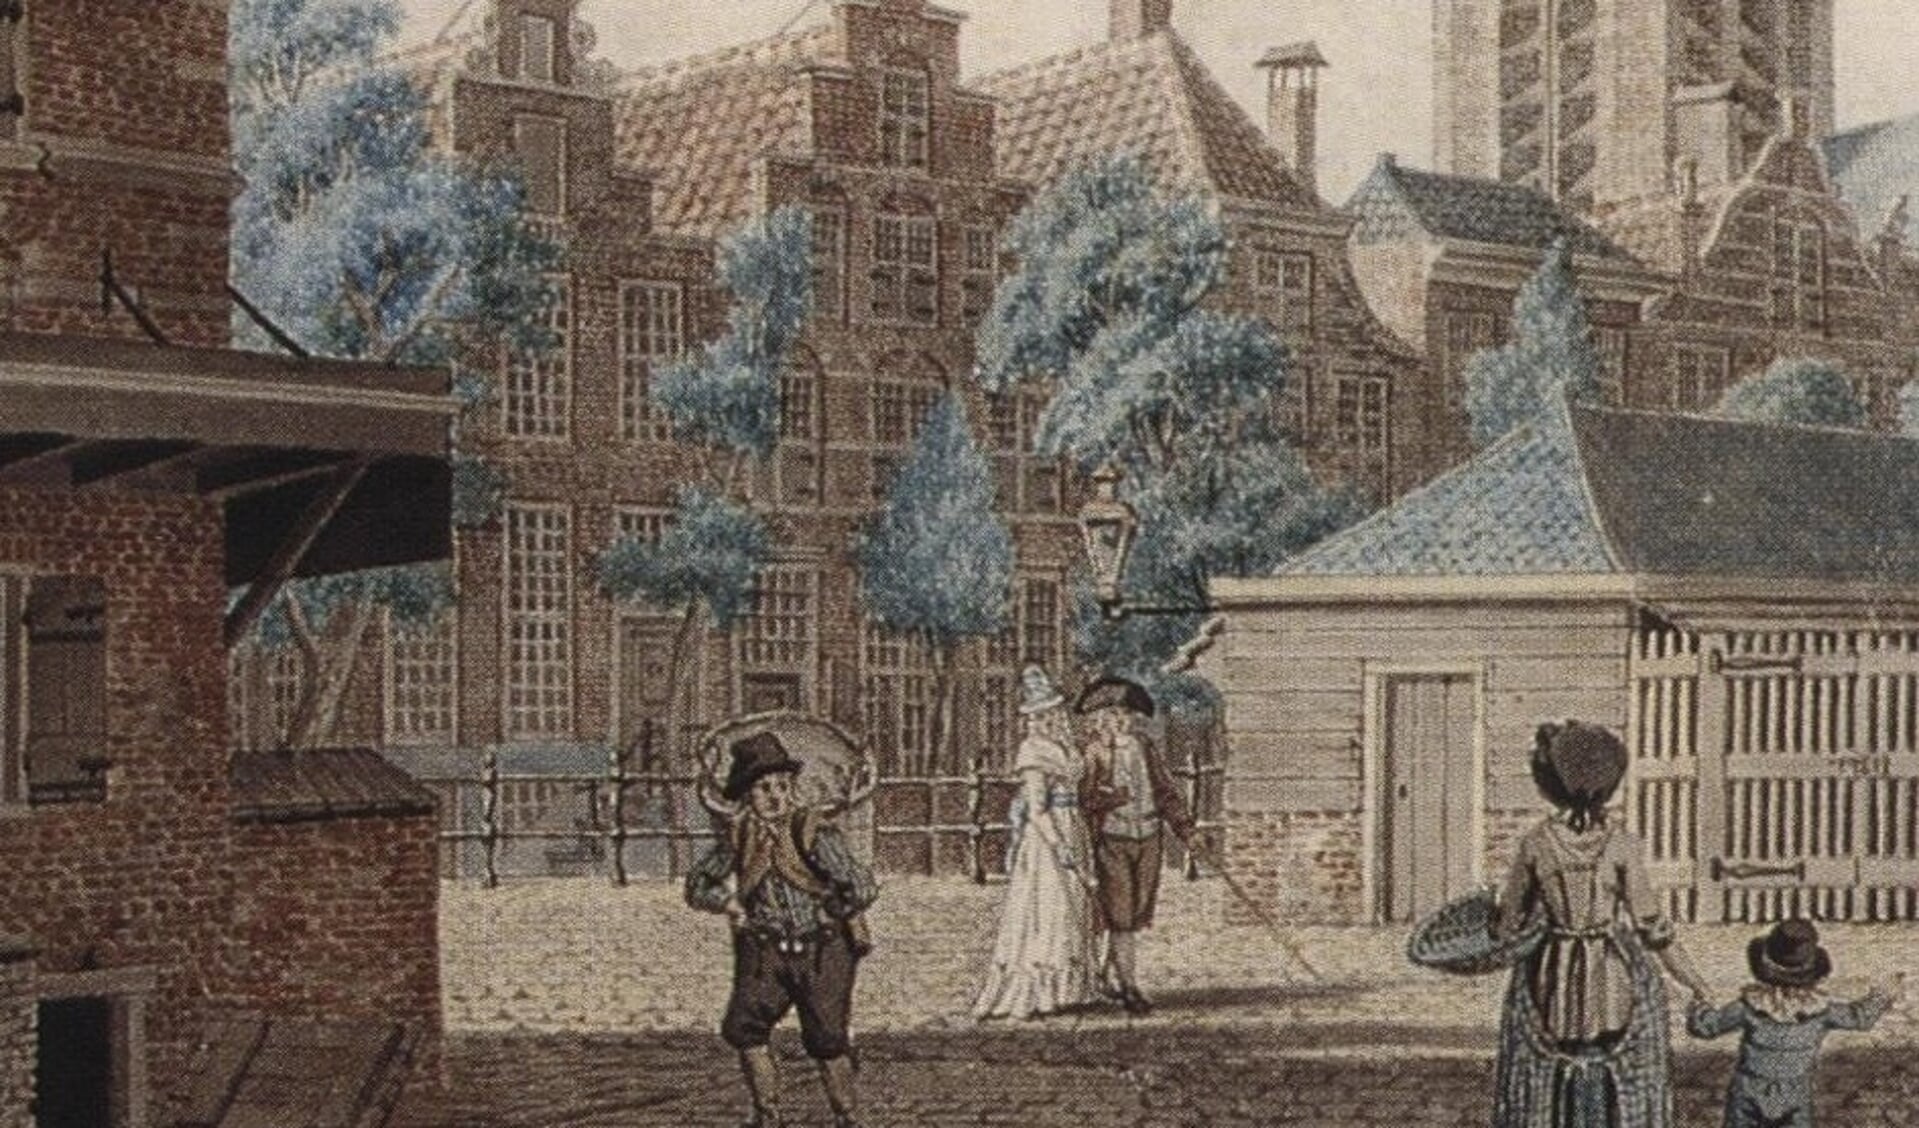 De meest linkse trapgevel is van “Het Gulden Hoofd”.  Fragment uit een werk van Isaac Ouwater 1785